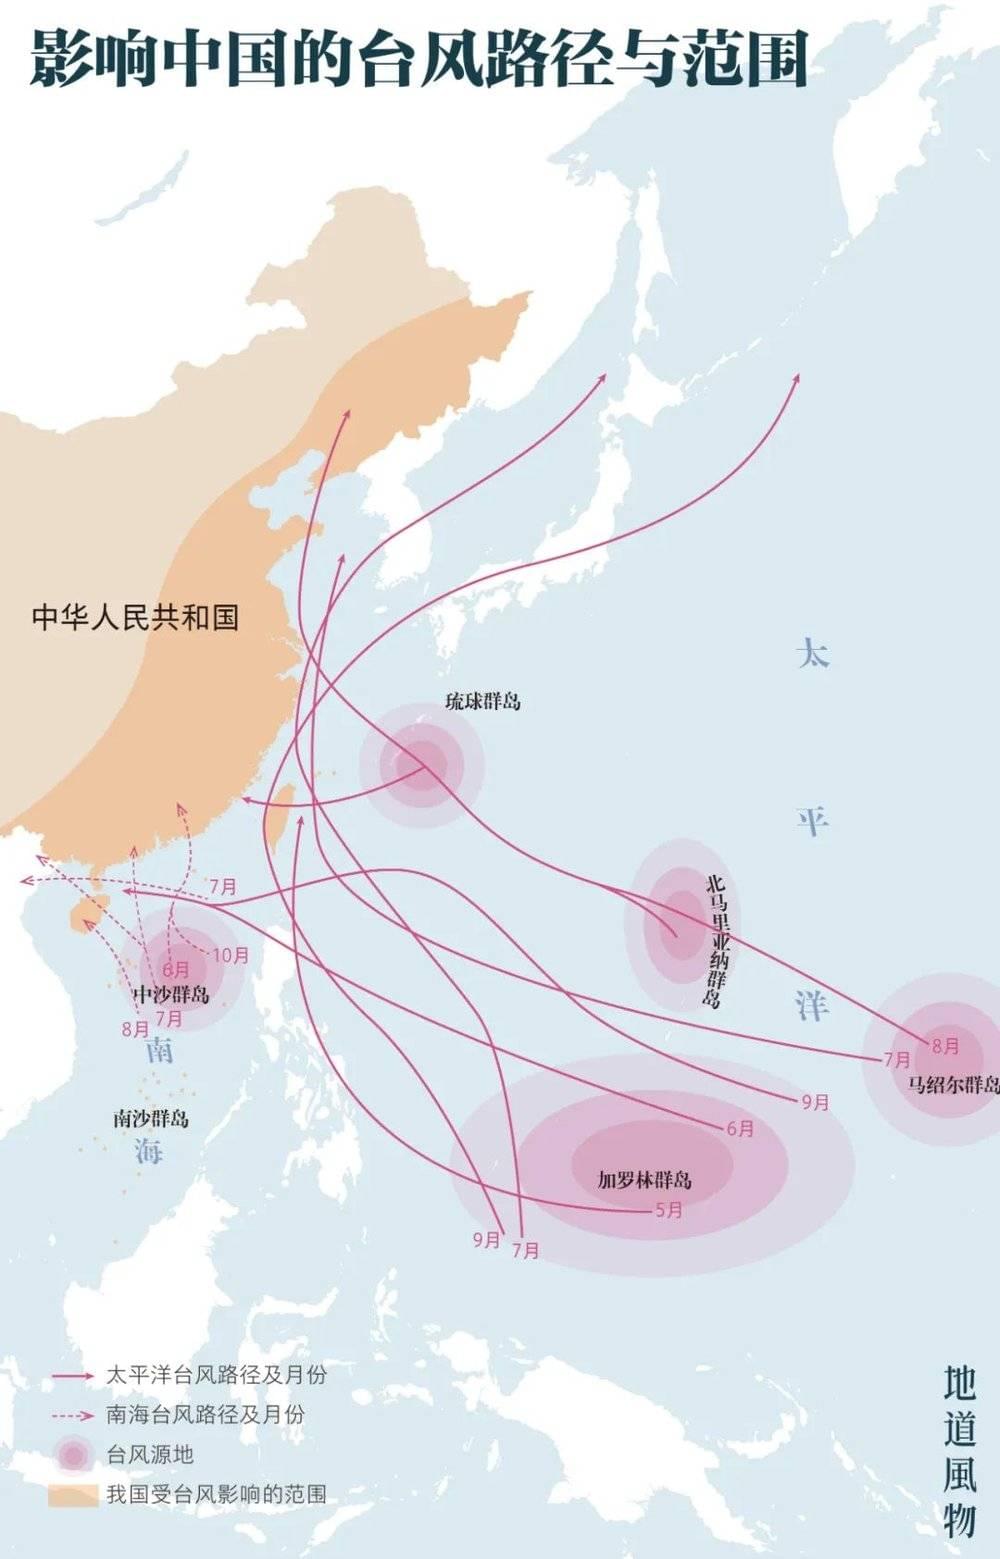 ▲ 影响中国的台风路径与范围。制图/王跃<br>